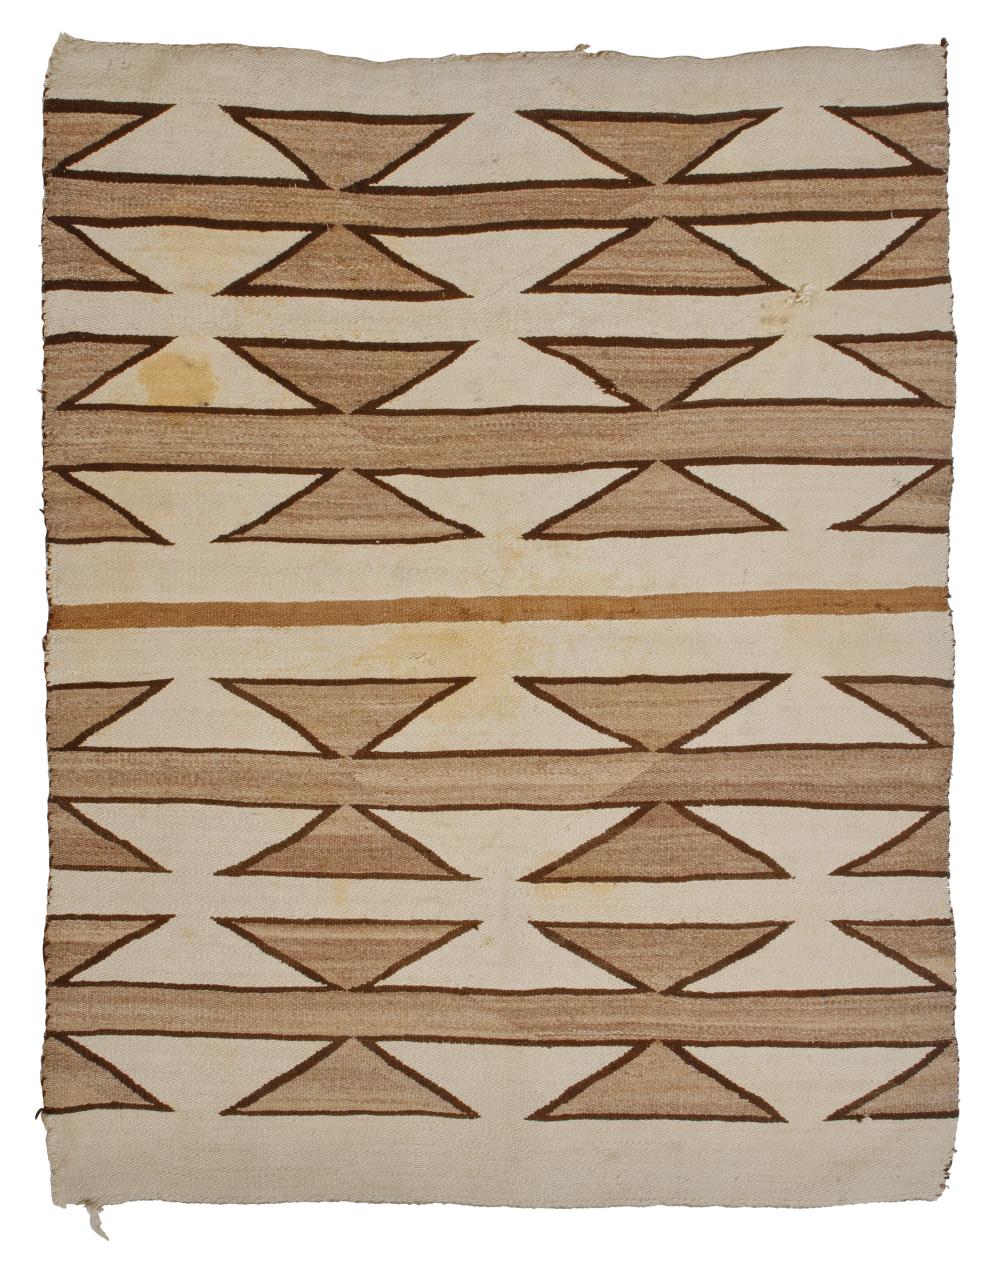 A NAVAJO TEXTILEA Navajo textile  30a980